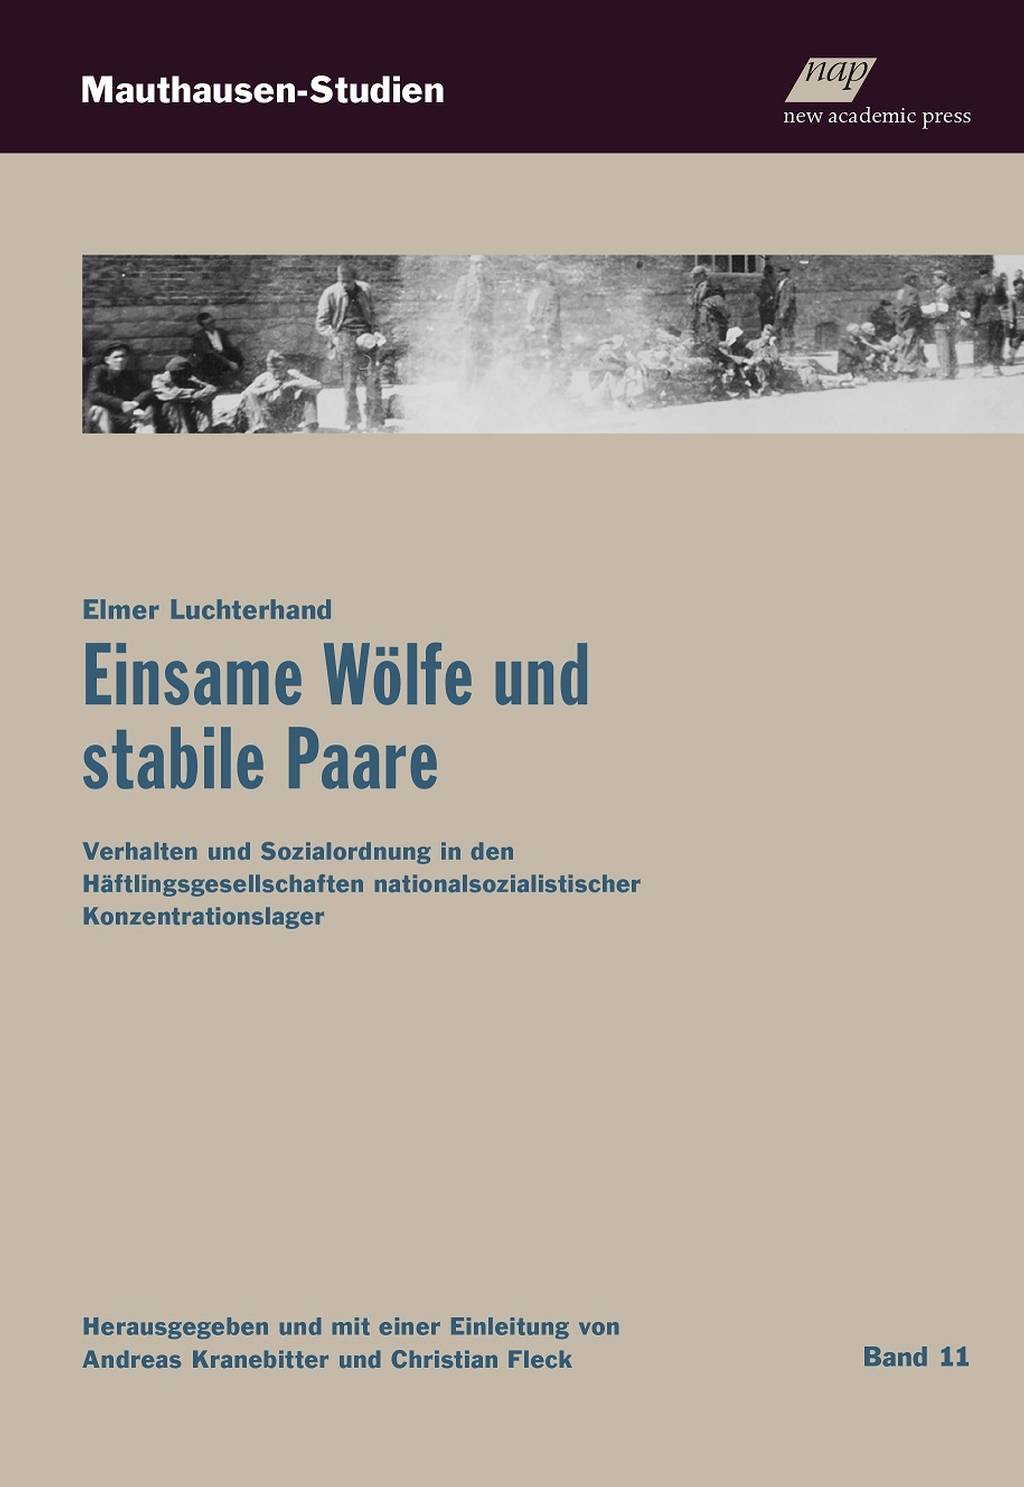 Book Launch: Elmer Luchterhand “Einsame Wölfe und stabile Paare” Mauthausen-Studien (volume 11)